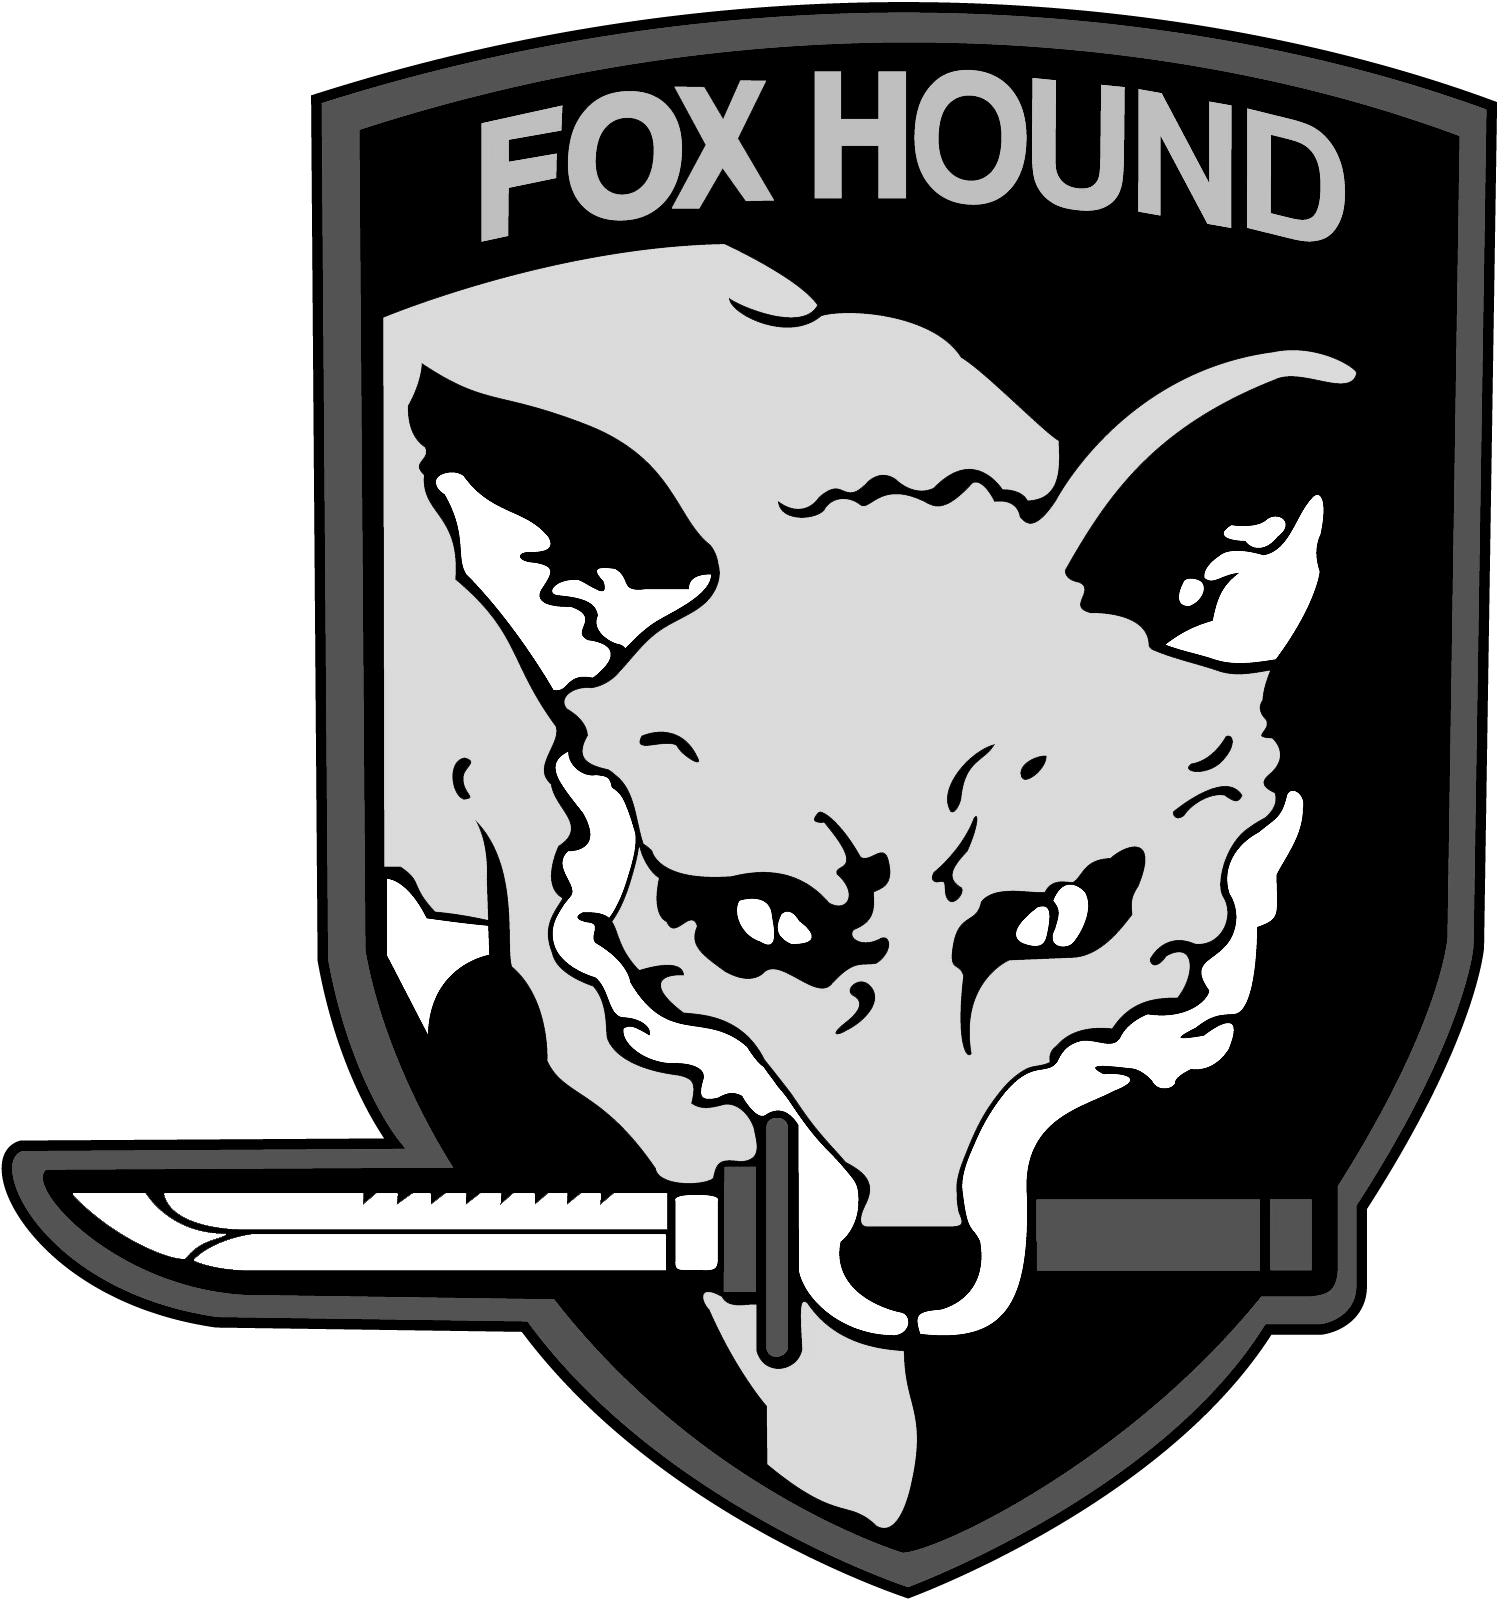 Foxhound Logo - FOXHOUND PRODUCTIONS | The FOXHOUND Wiki | FANDOM powered by Wikia